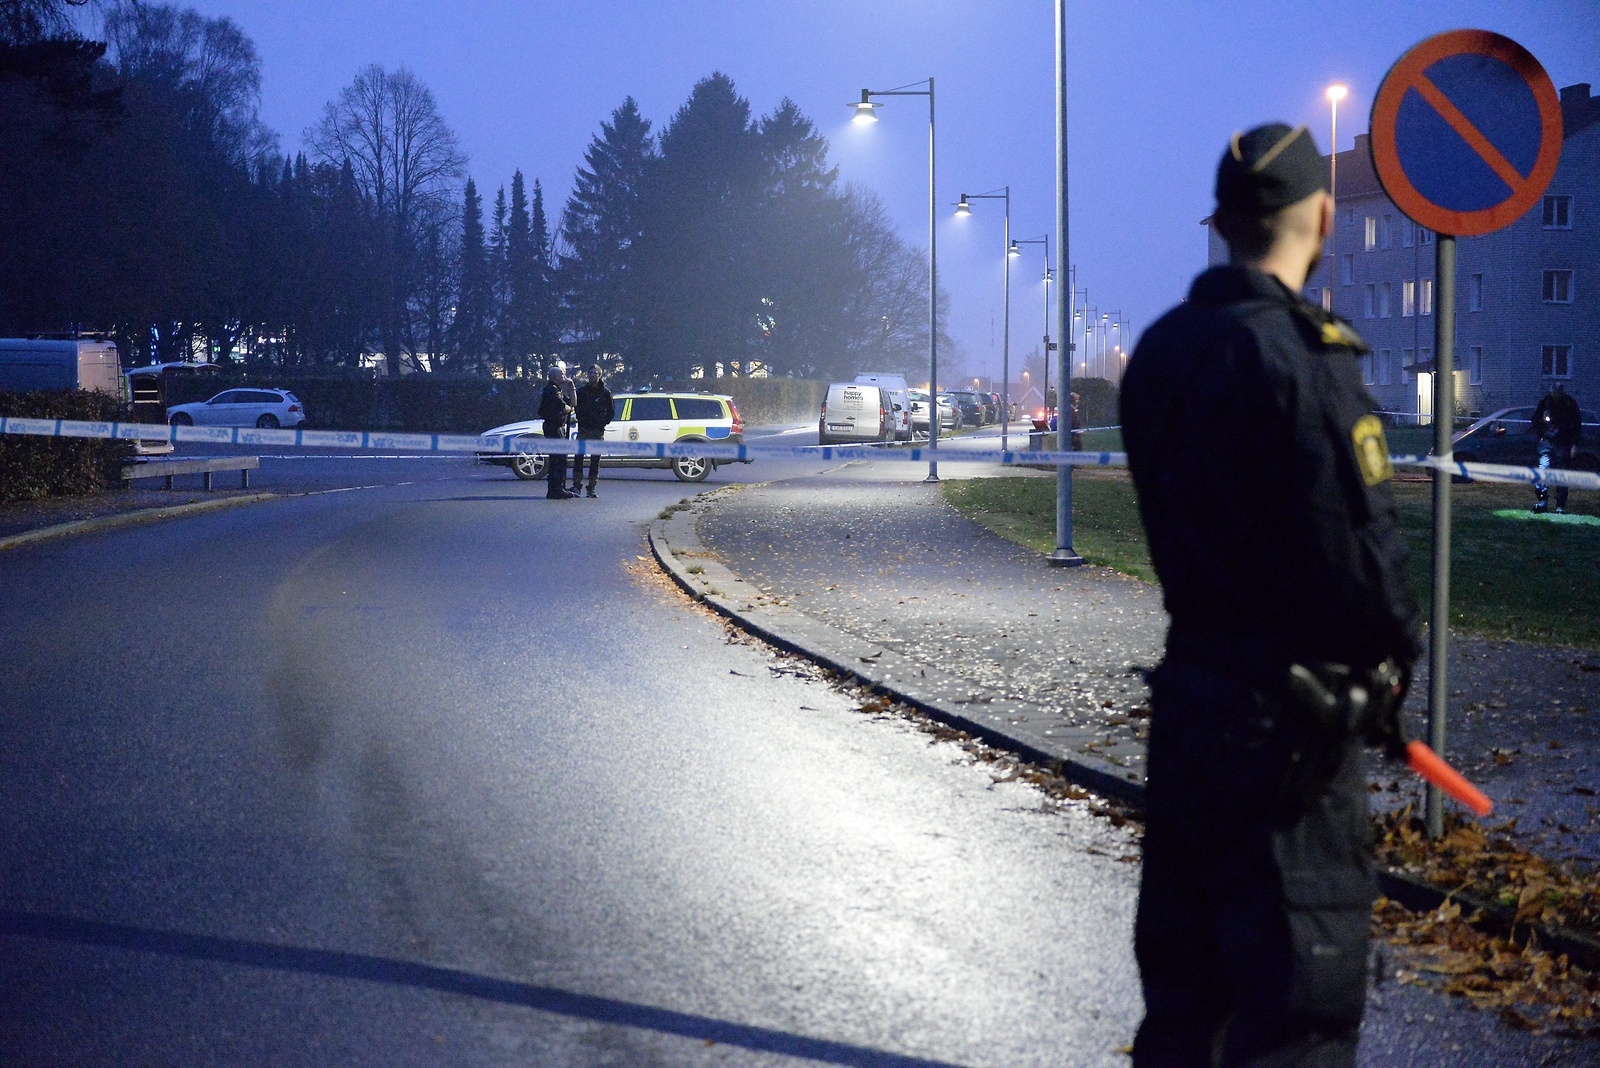 En polis höll vakt medan kollegor genomförde en teknisk undersökning på platsen. Även grannar hördes under den sena eftermiddagen. Foto: Kristina Höjendal